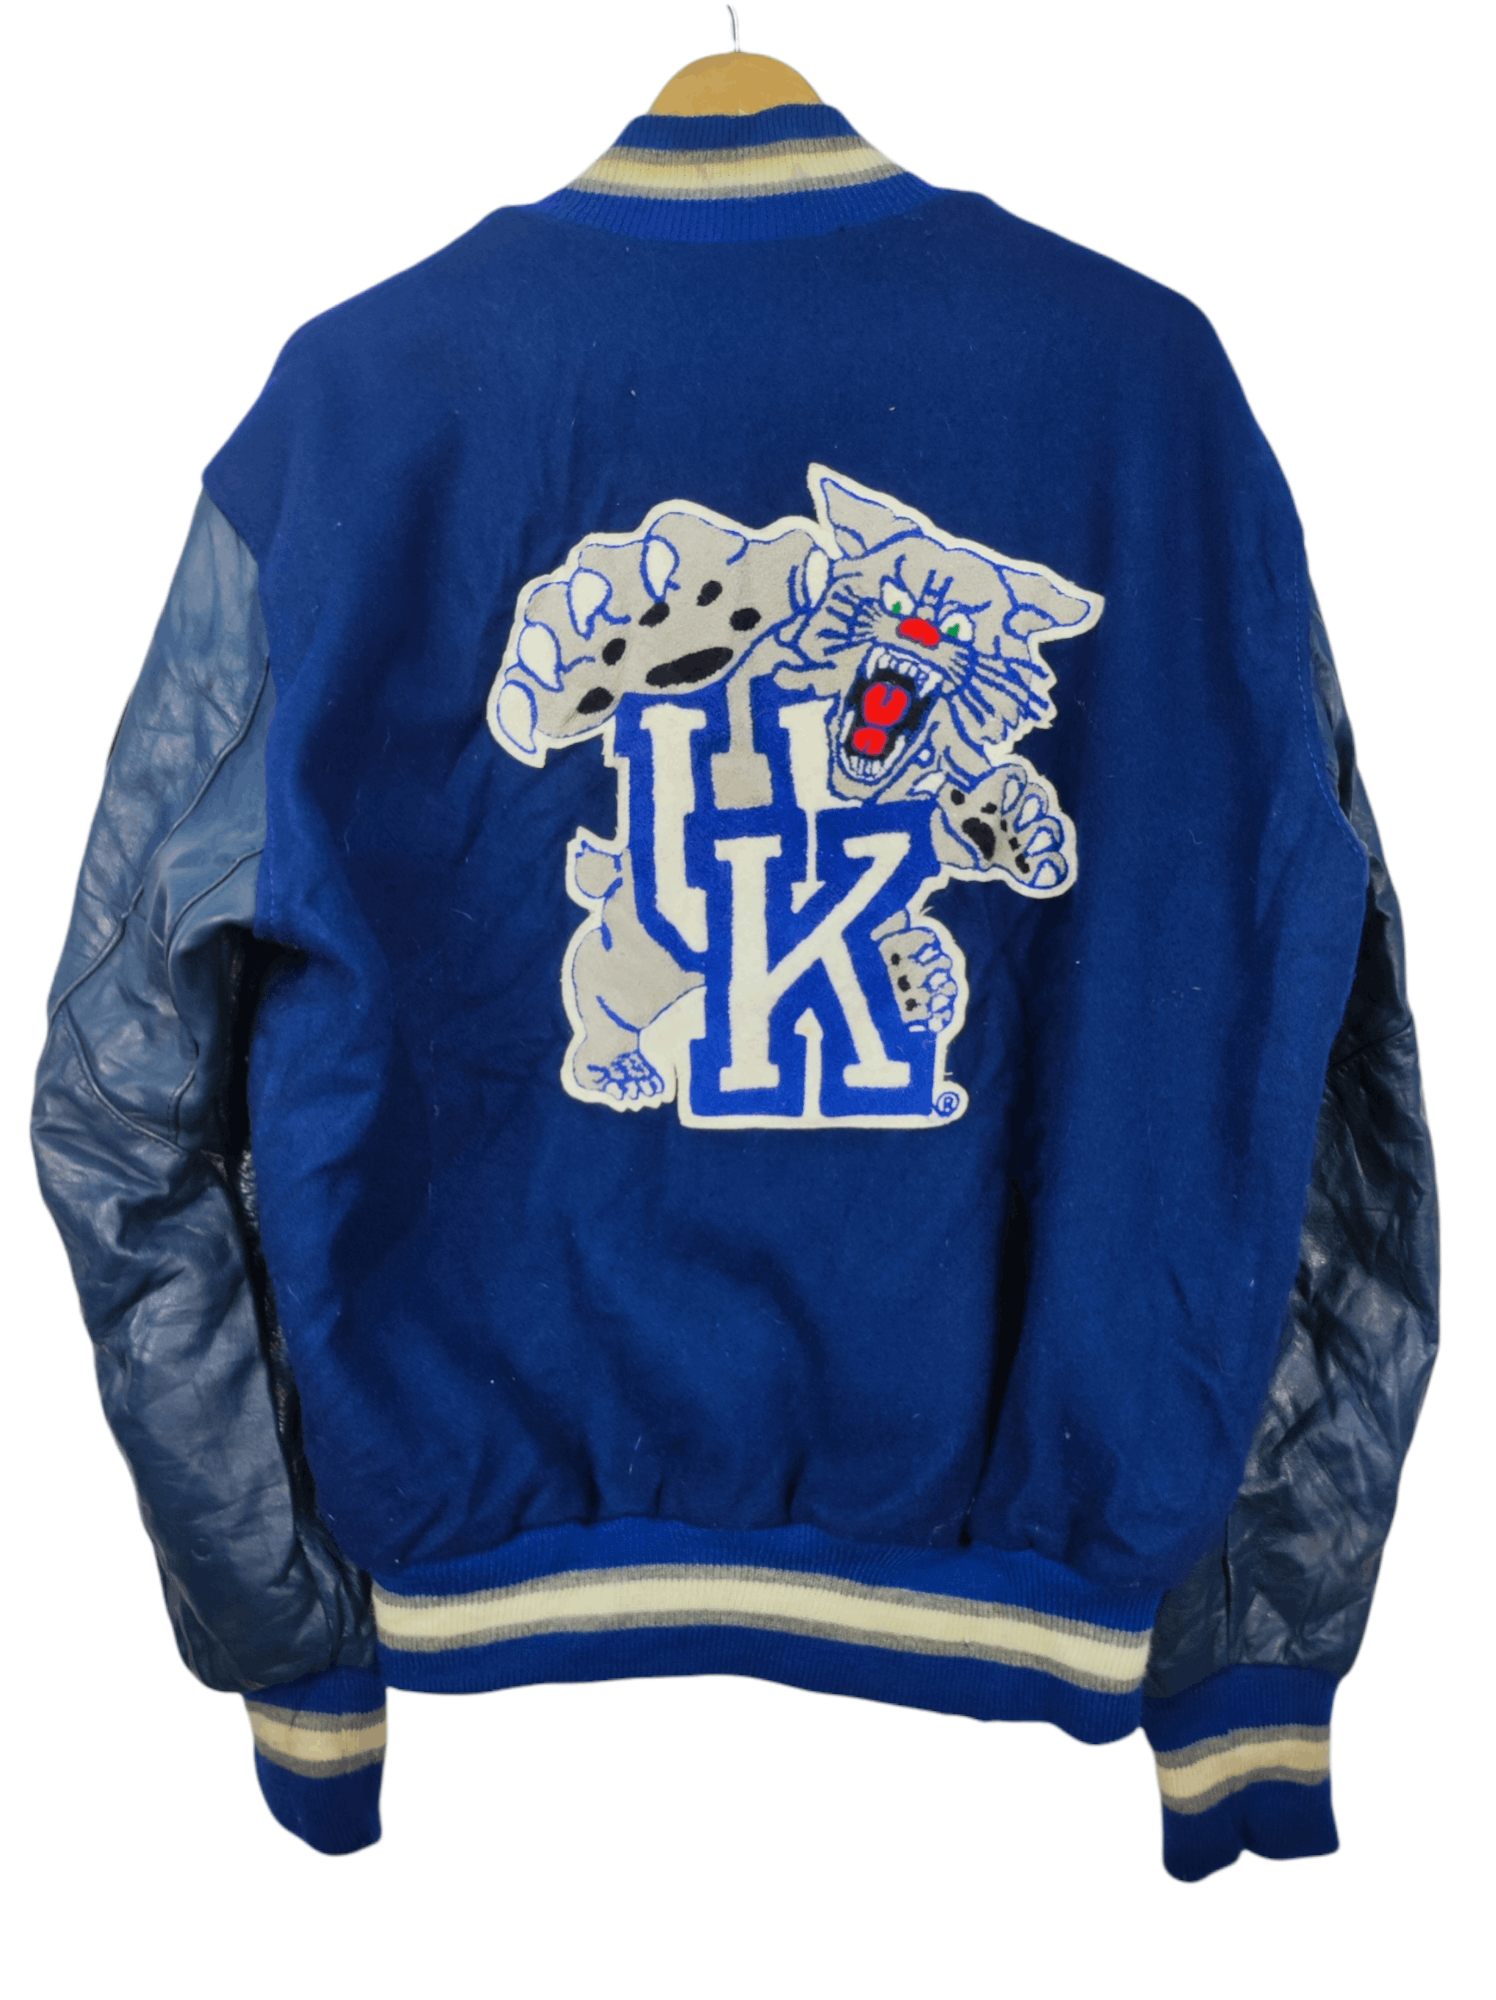 Delong Vintage University Of Kentucky Varsity Jacket Size XL